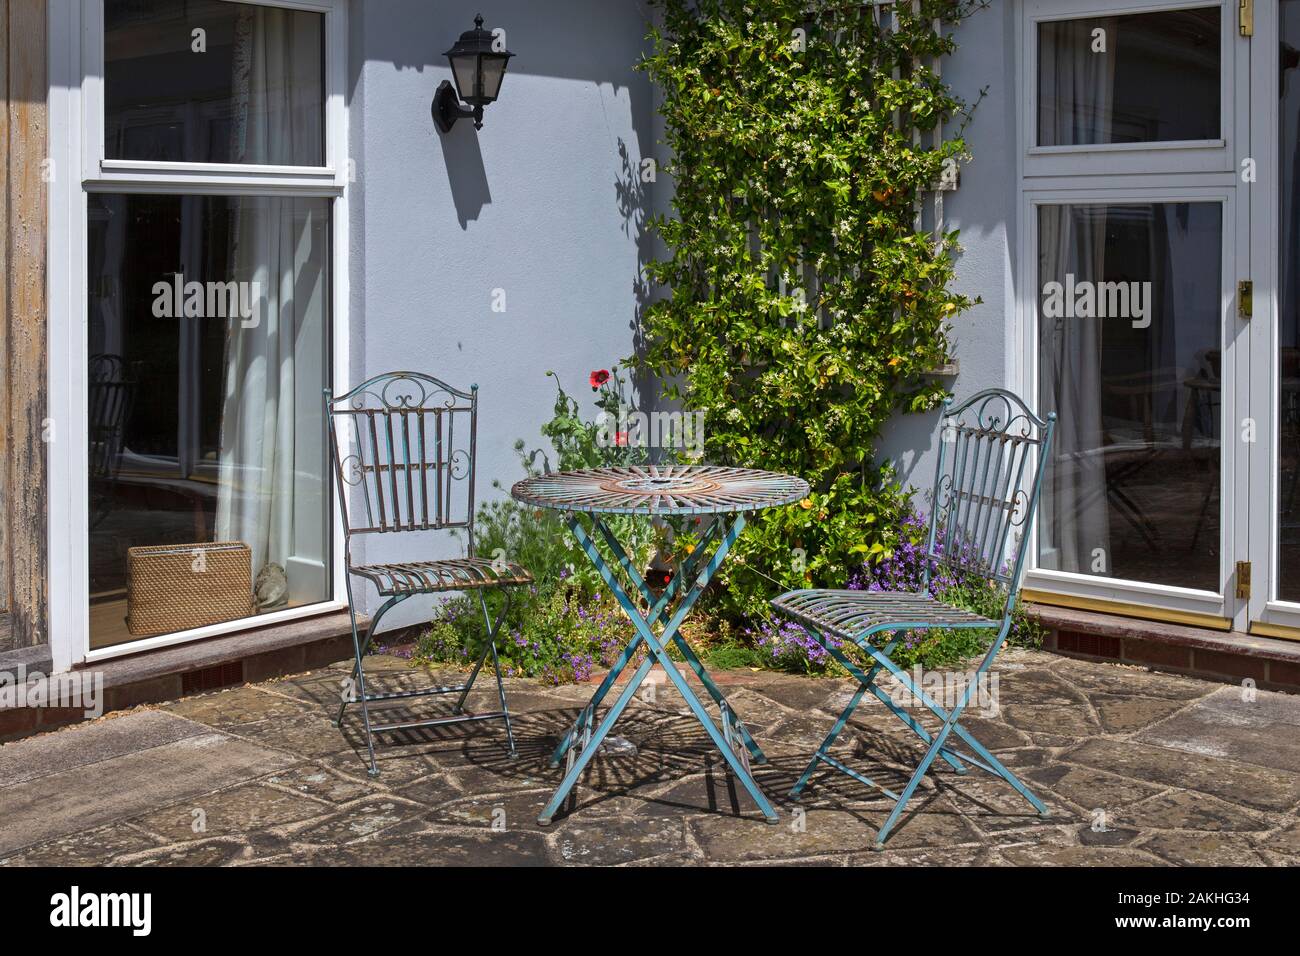 Jardín de metal con mesas y sillas en patio de piedra en jardín inglés de verano Foto de stock